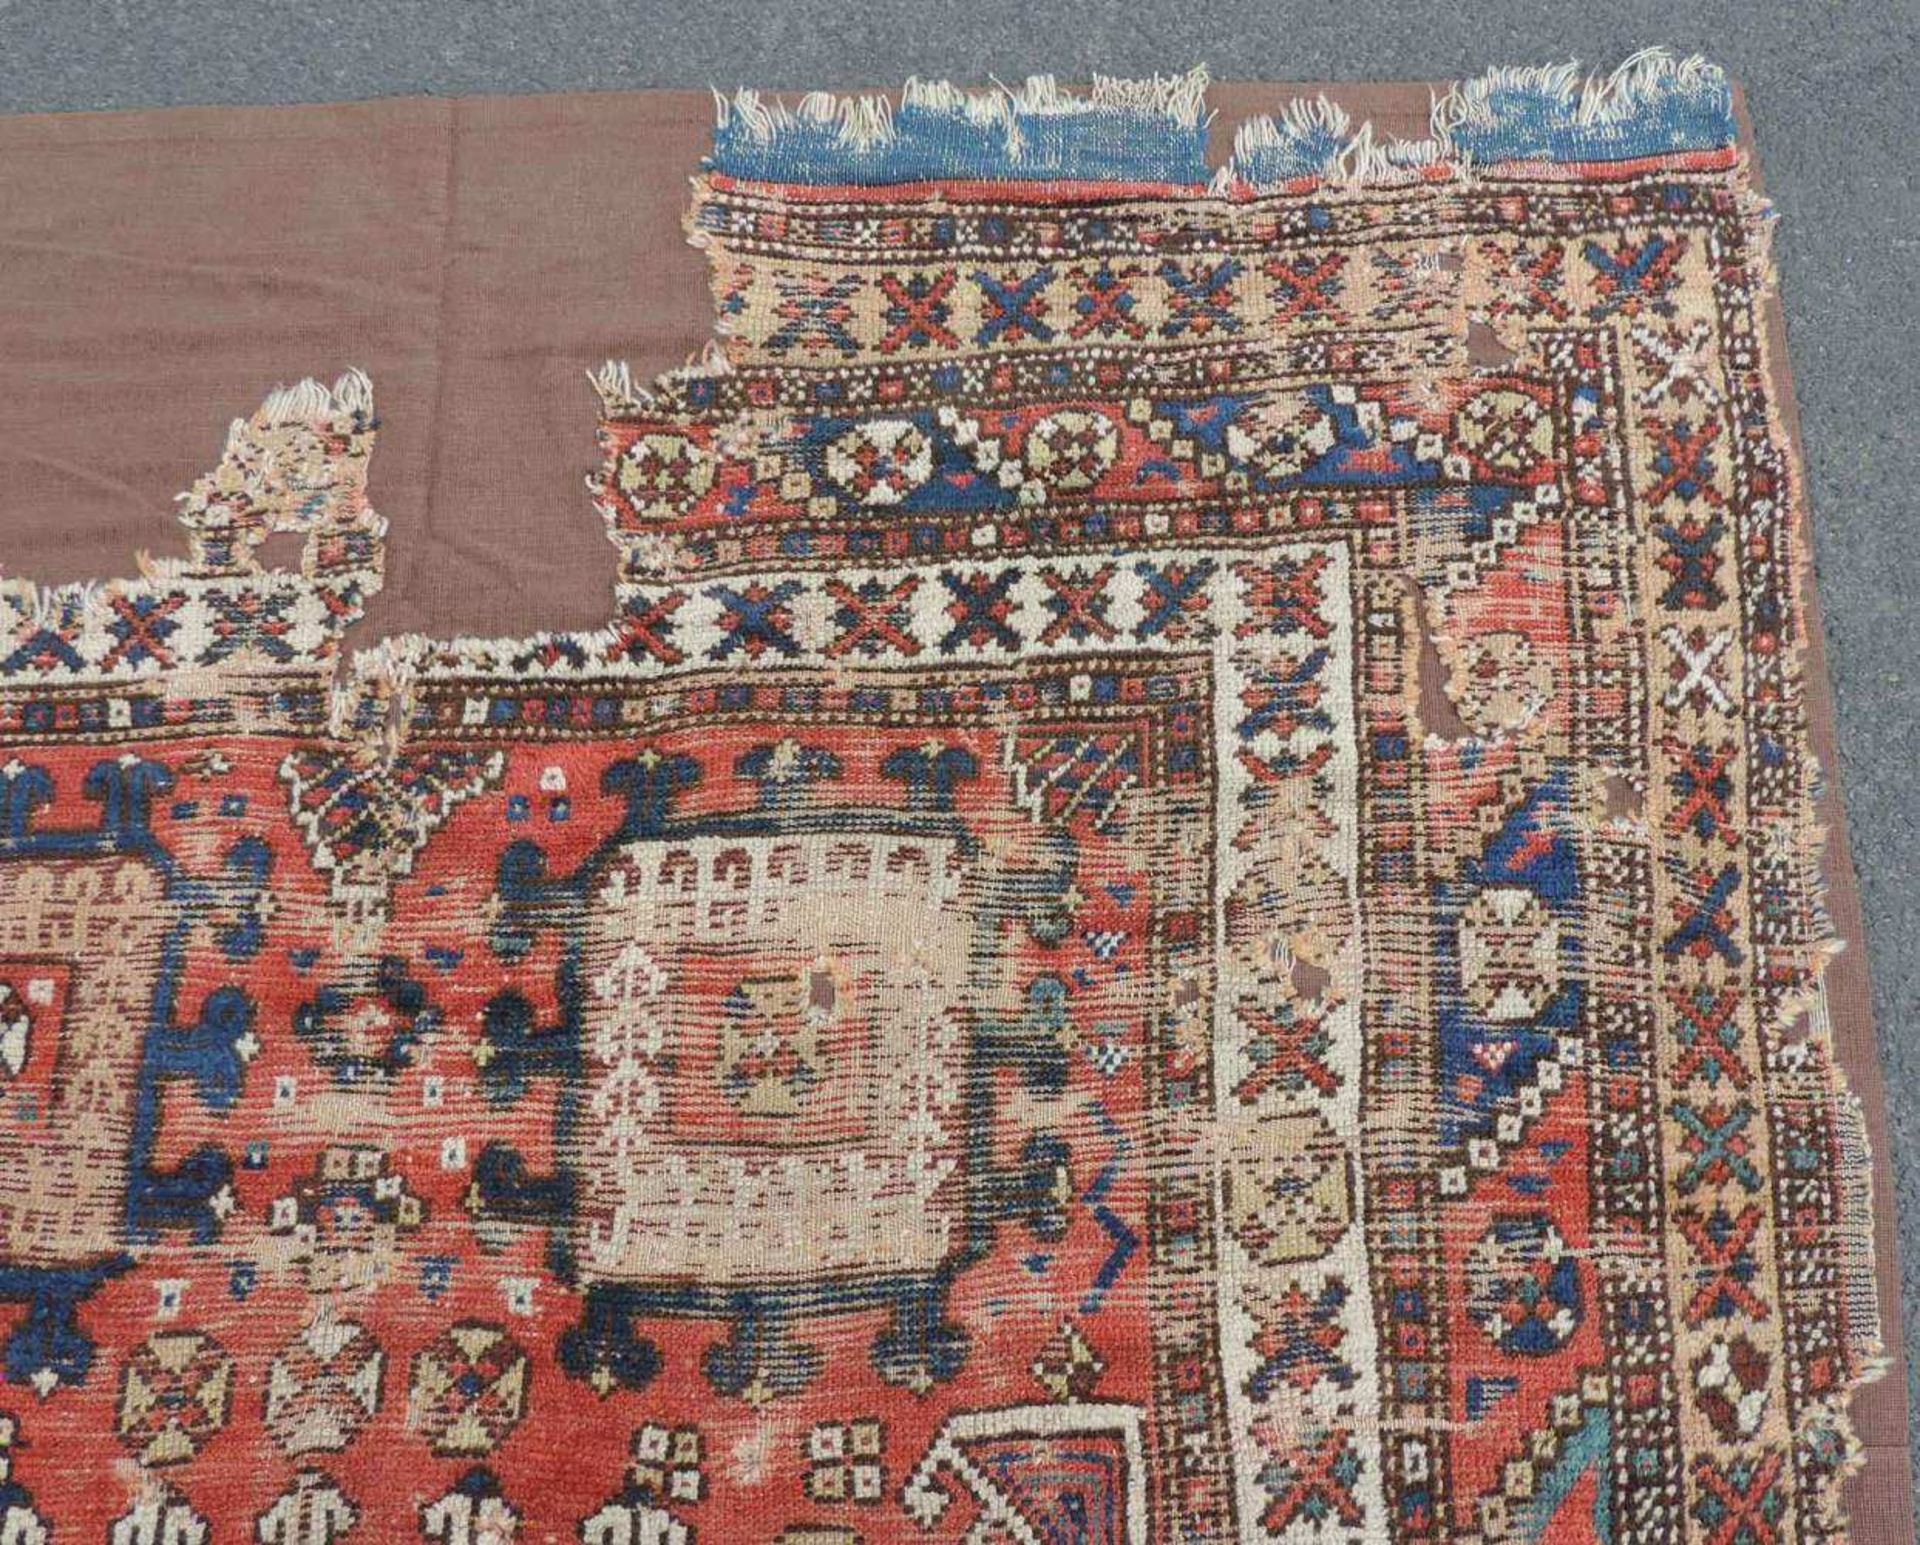 Dorfteppich. West - Anatolien, Türkei. Antik, 18. Jahrhundert. 217 cm x 159 cm. Handgeknüpft. - Image 5 of 7